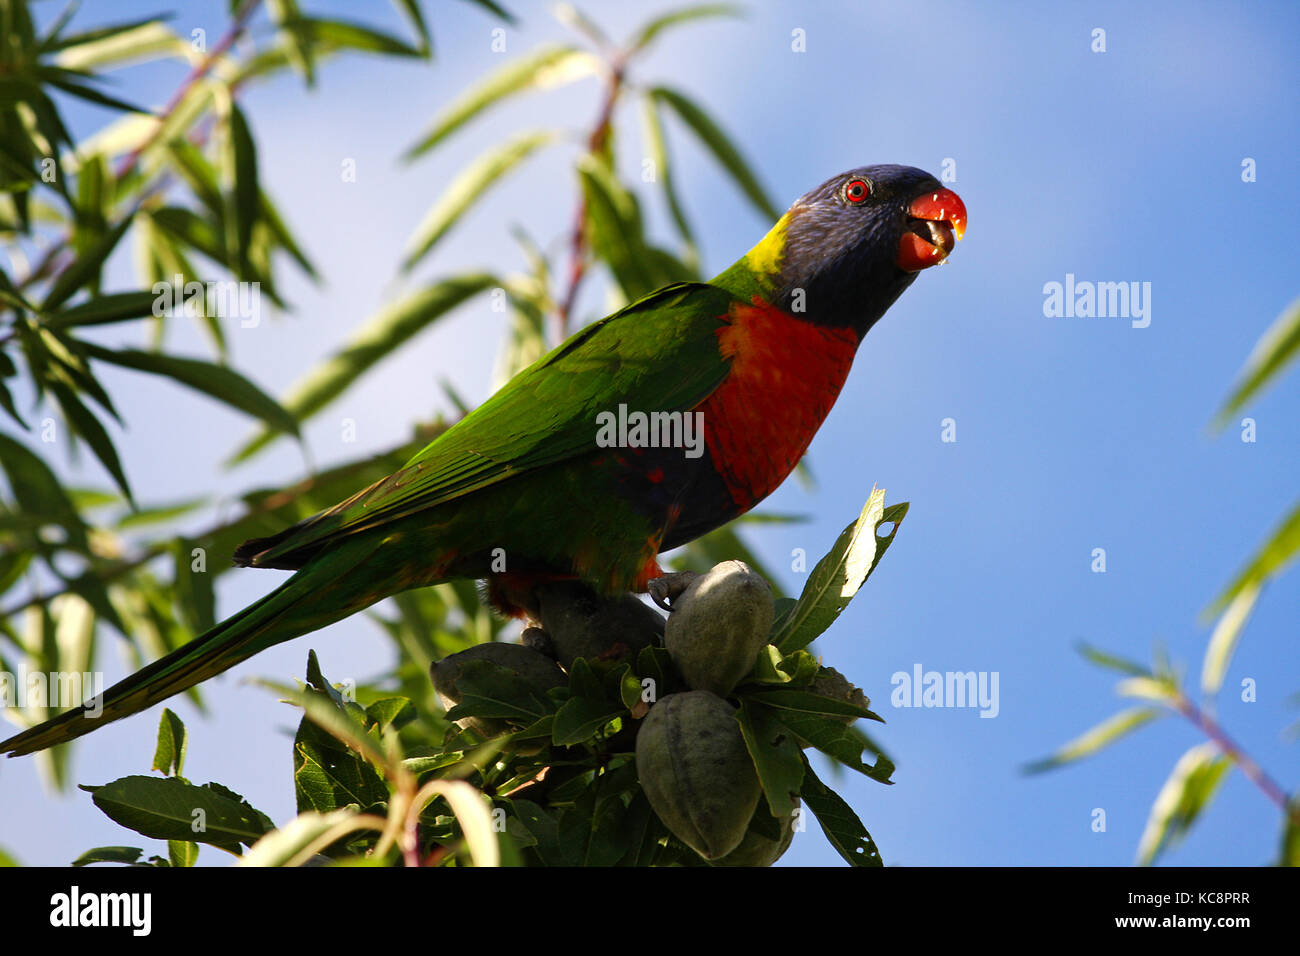 An Australian Rainbow Lorikeet Parrot eating almonds Stock Photo